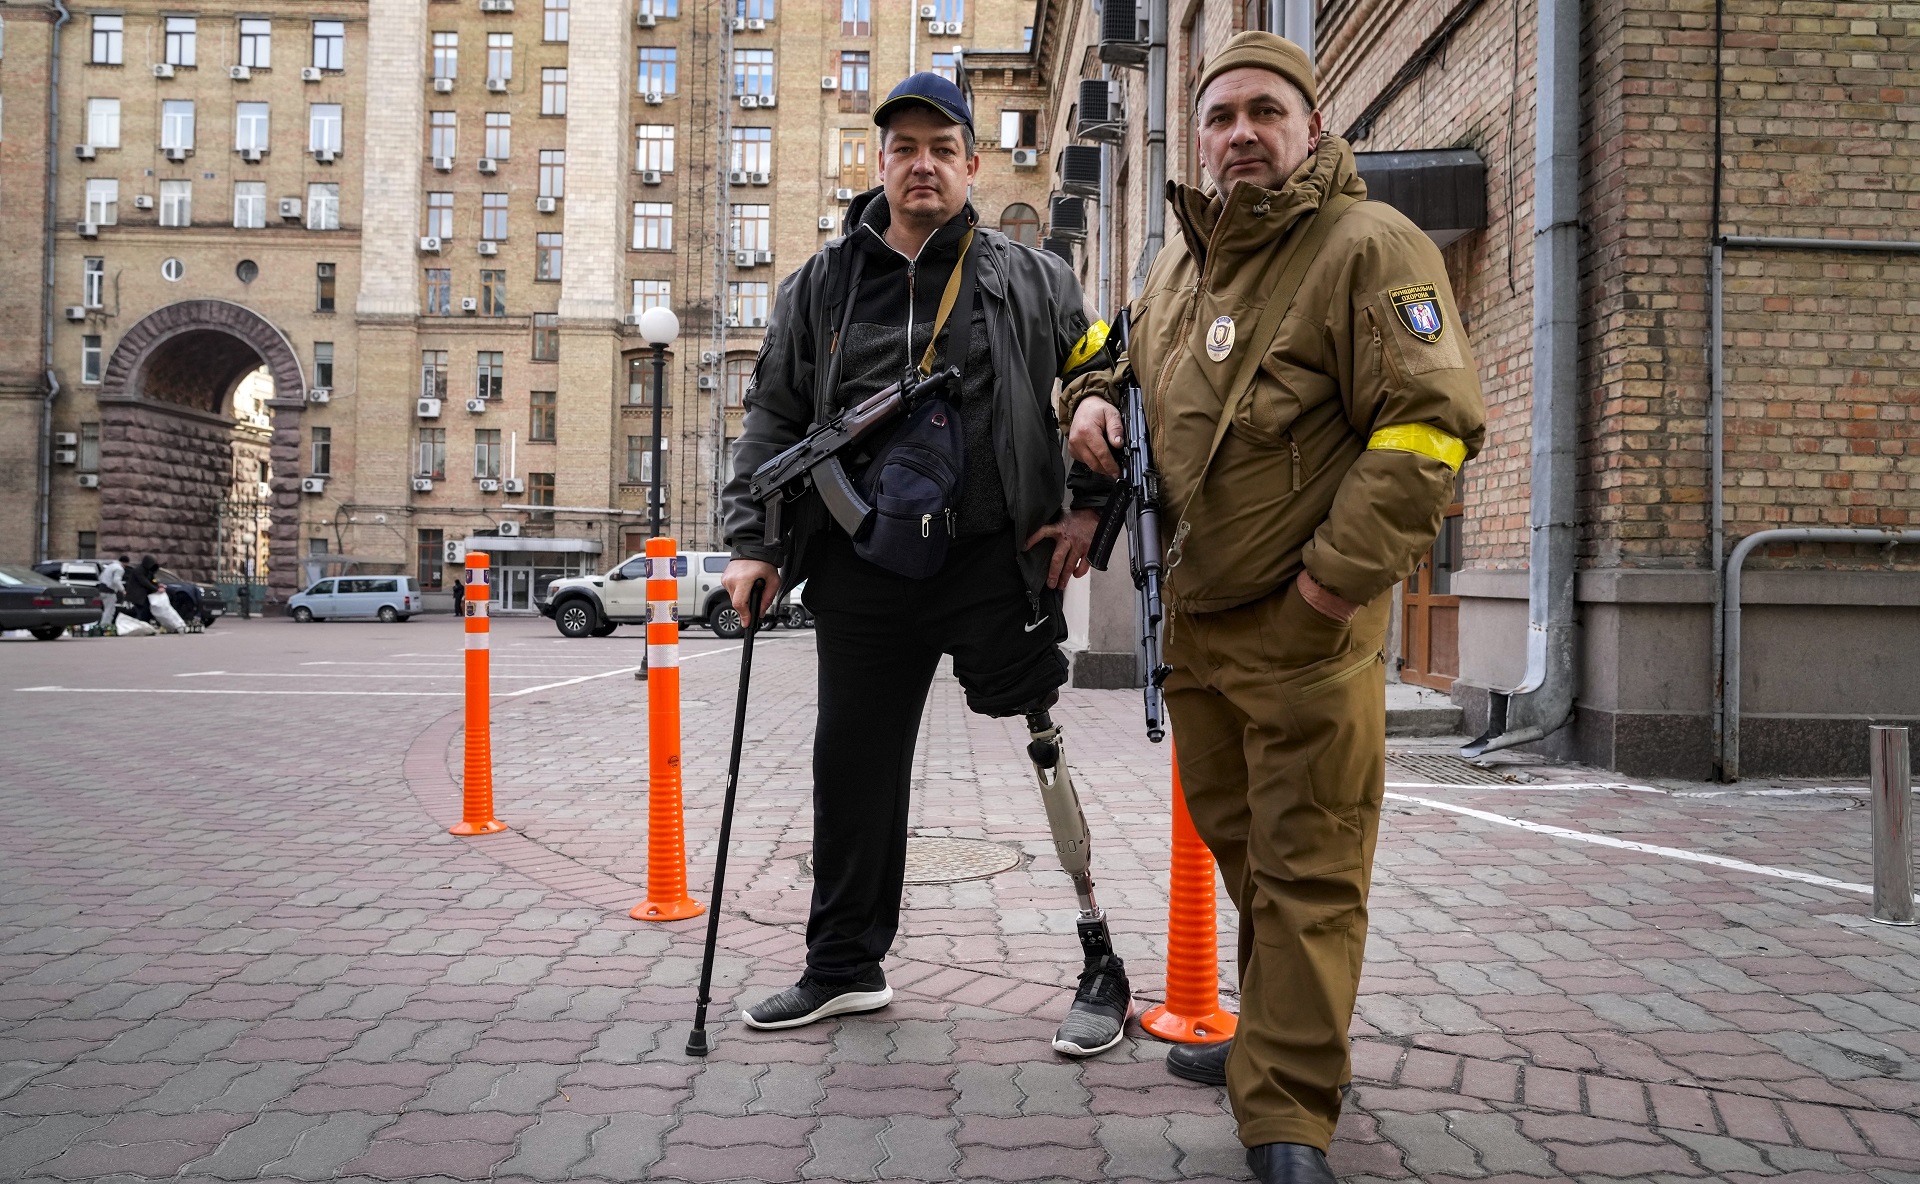 Dos voluntarios patrullando las calles desiertas de un barrio cercano al centro histórico. Uno de ellos perdió una pierna luchando contra los separatistas pro-rusos en 2014 en Luhansk. Forman parte de la resistencia popular organizada en las principales ciudades ucranianas. AP Photo/Efrem Lukatsky.